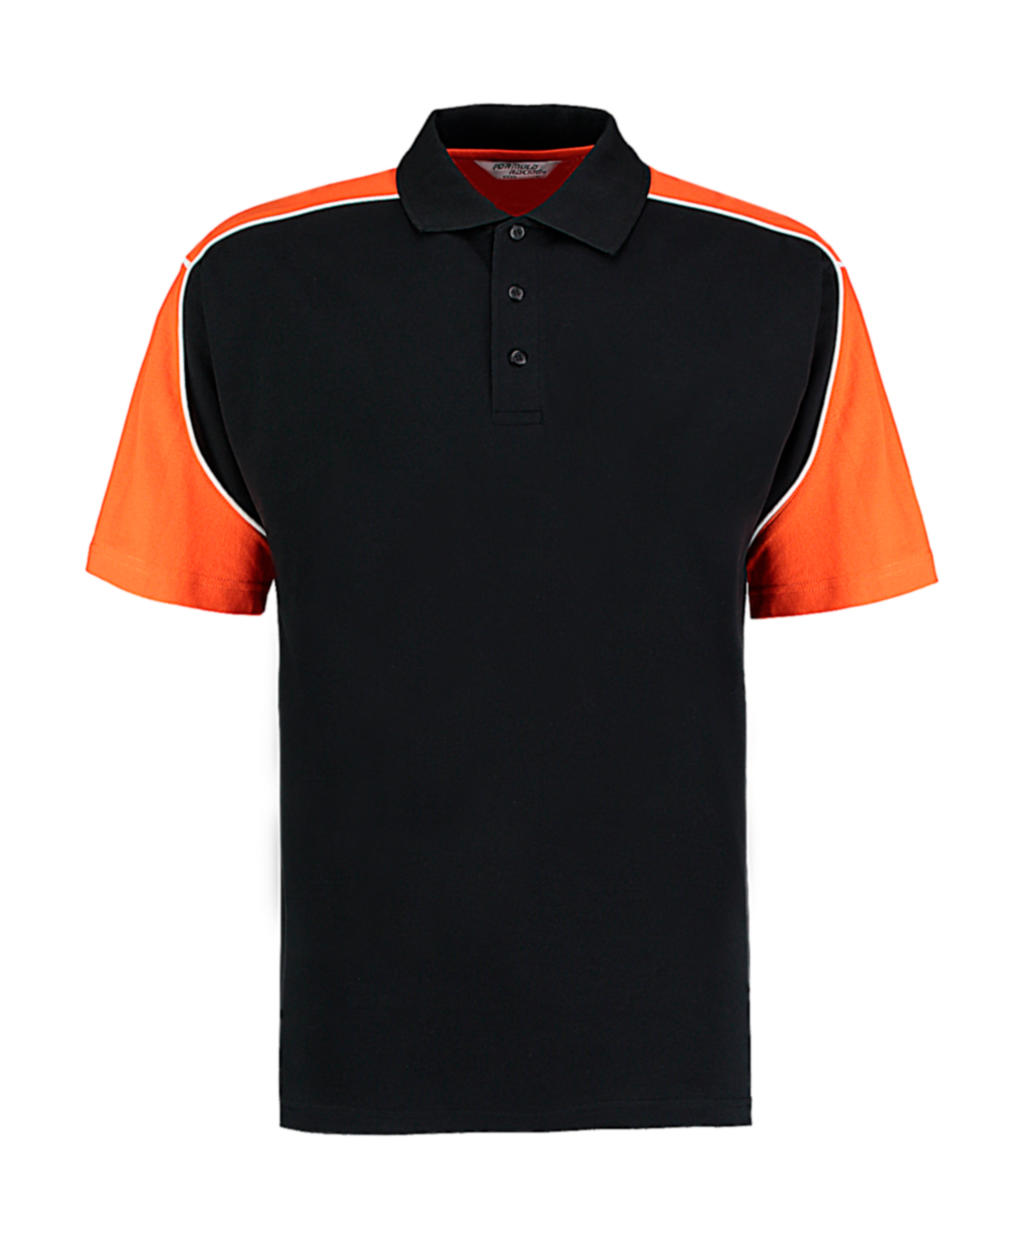  Classic Fit Monaco Polo  in Farbe Black/Orange/White